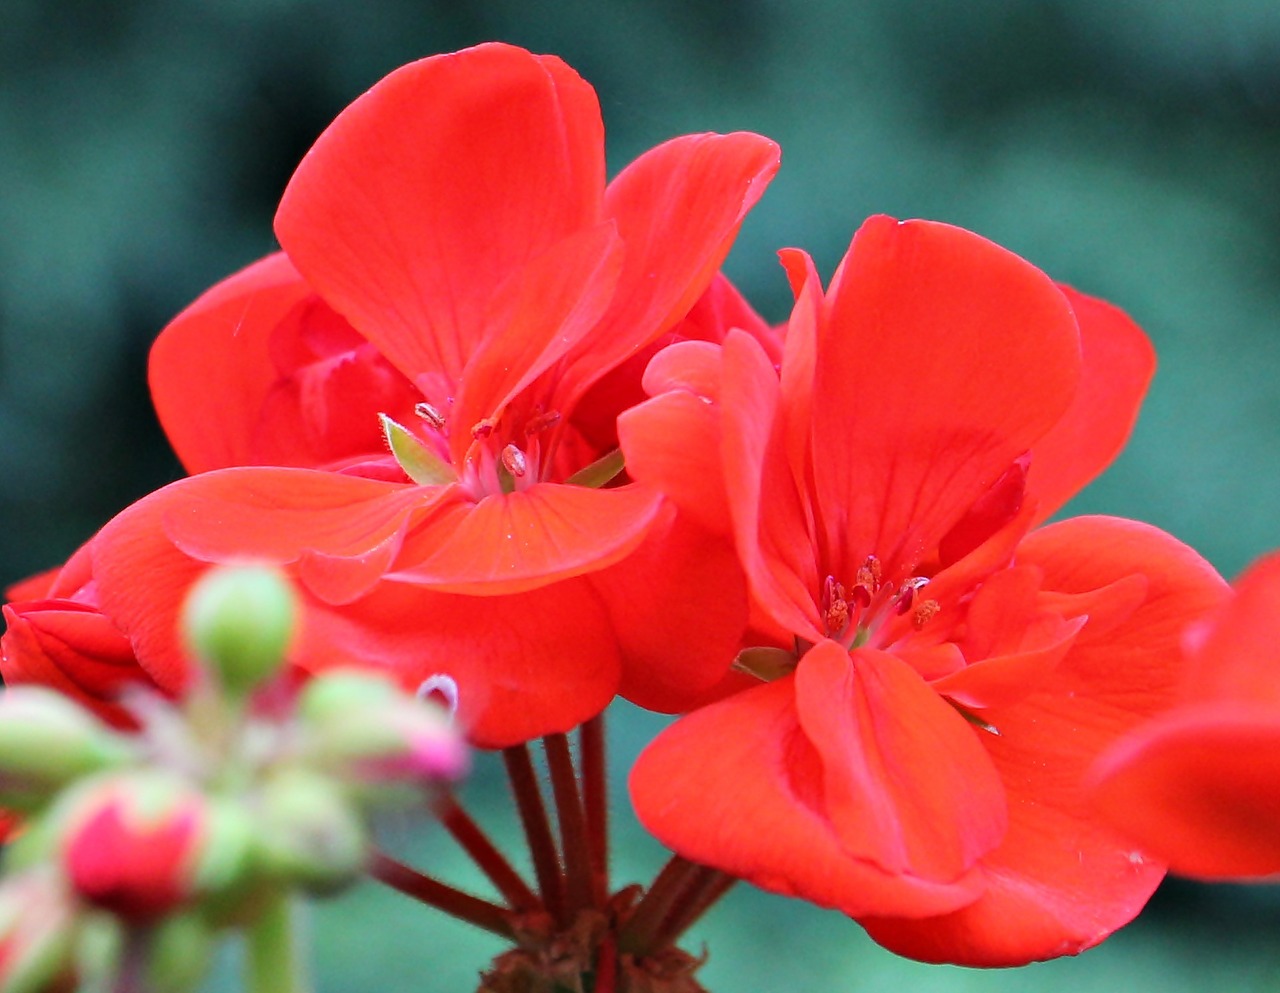 geranium red blossom free photo